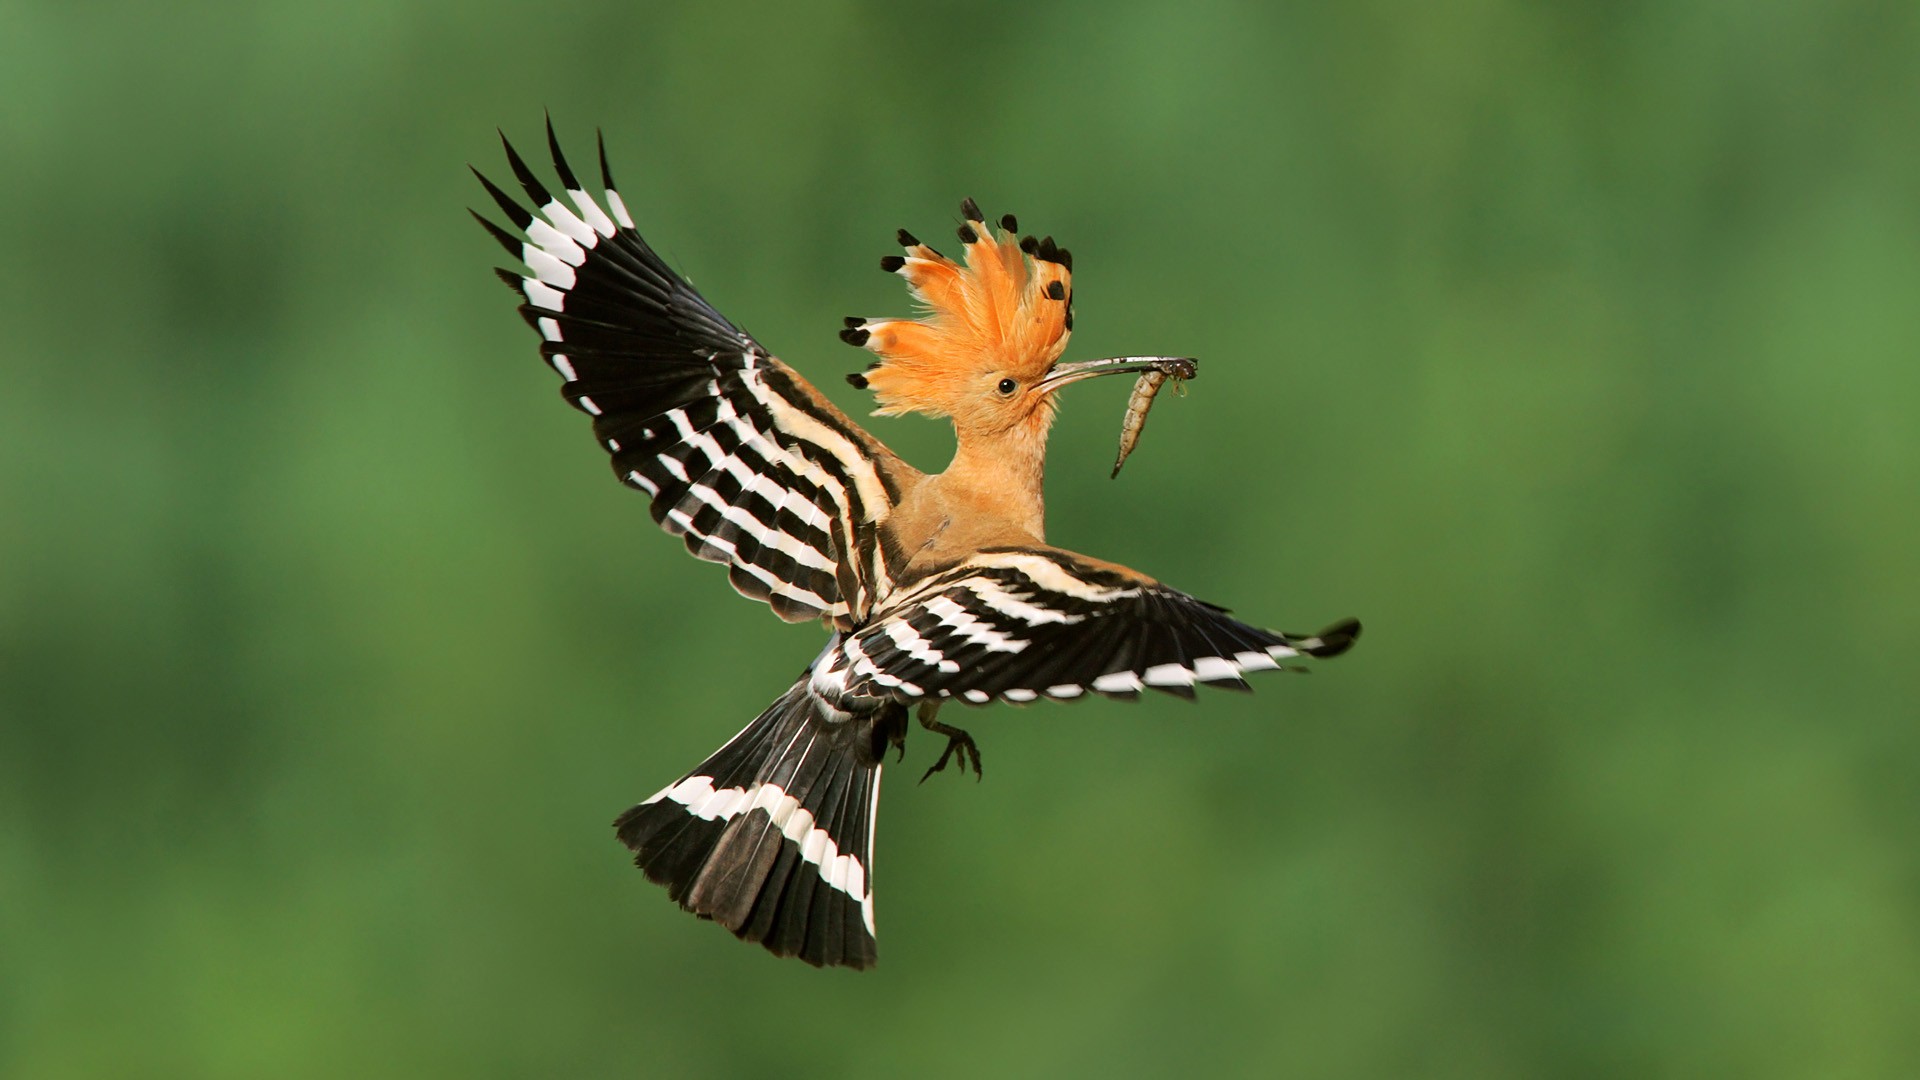 birds-madagascar-poland-flight-hoopoe-new-hd-wallpaper.jpg